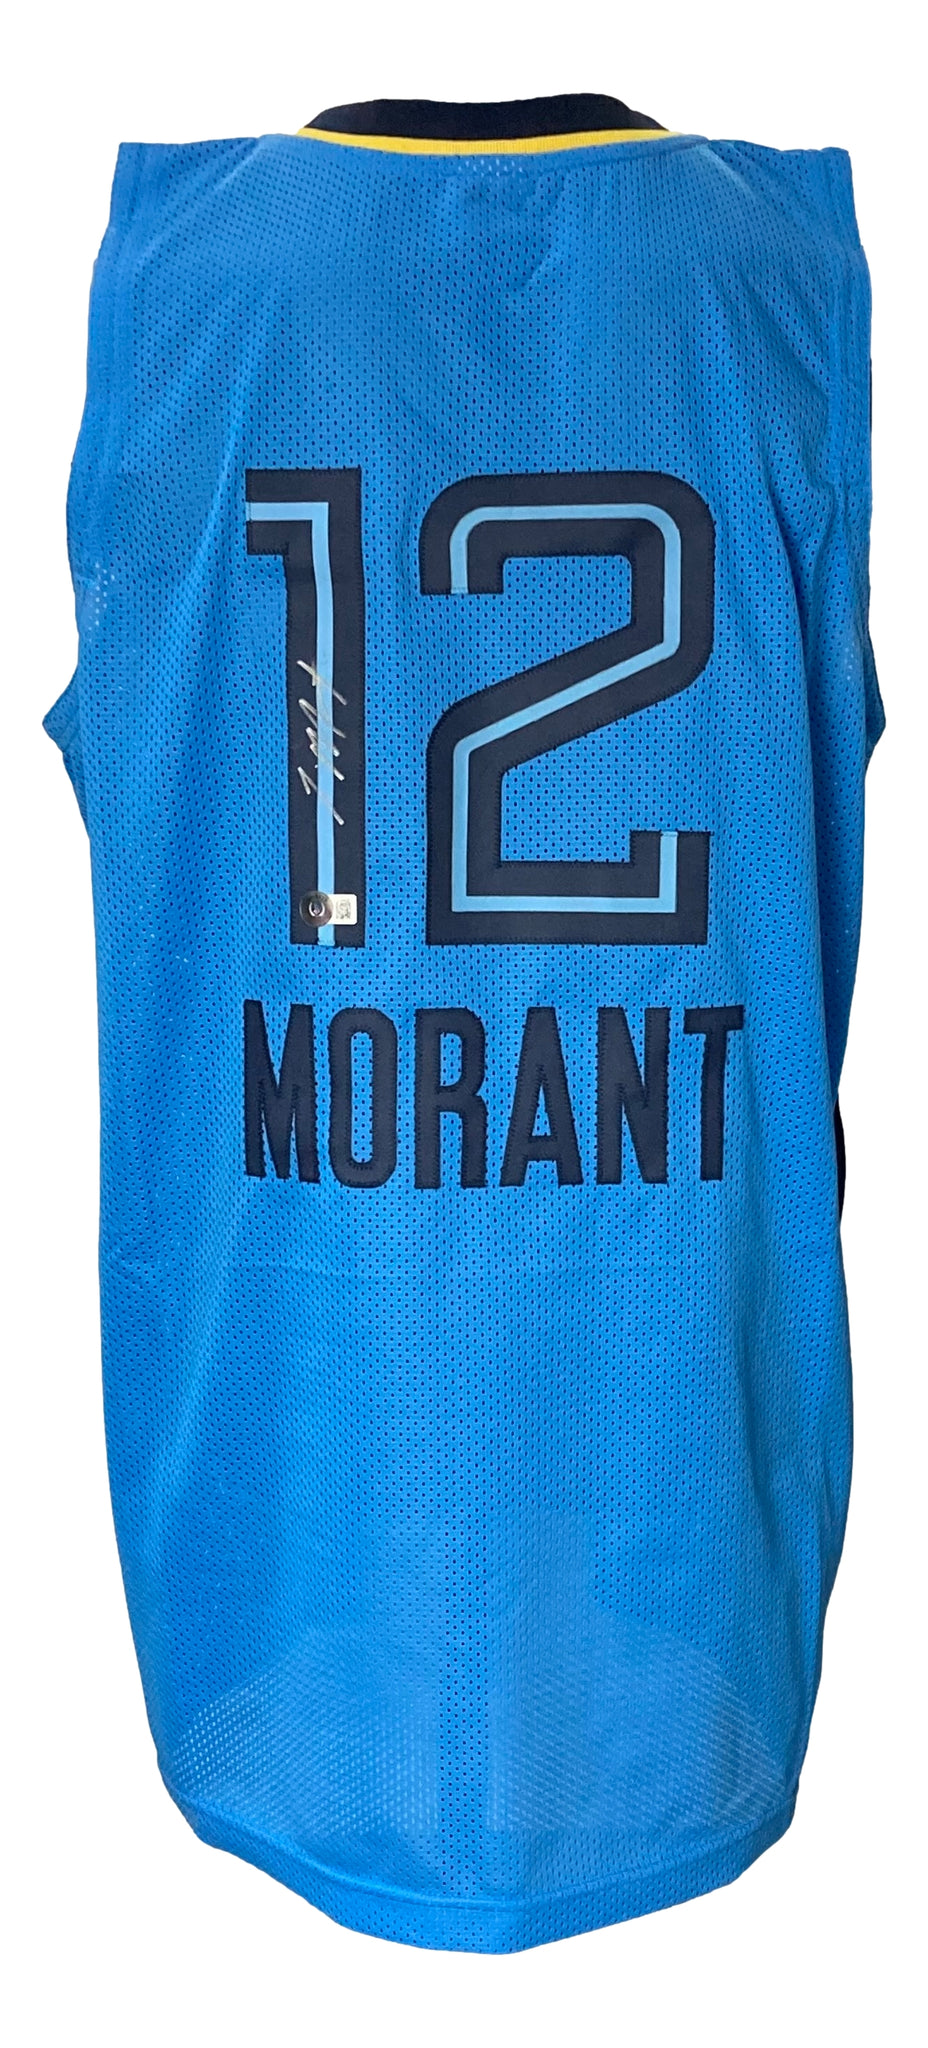 Ja Morant Signed Custom Light Blue Pro-Style Basketball Jersey BAS